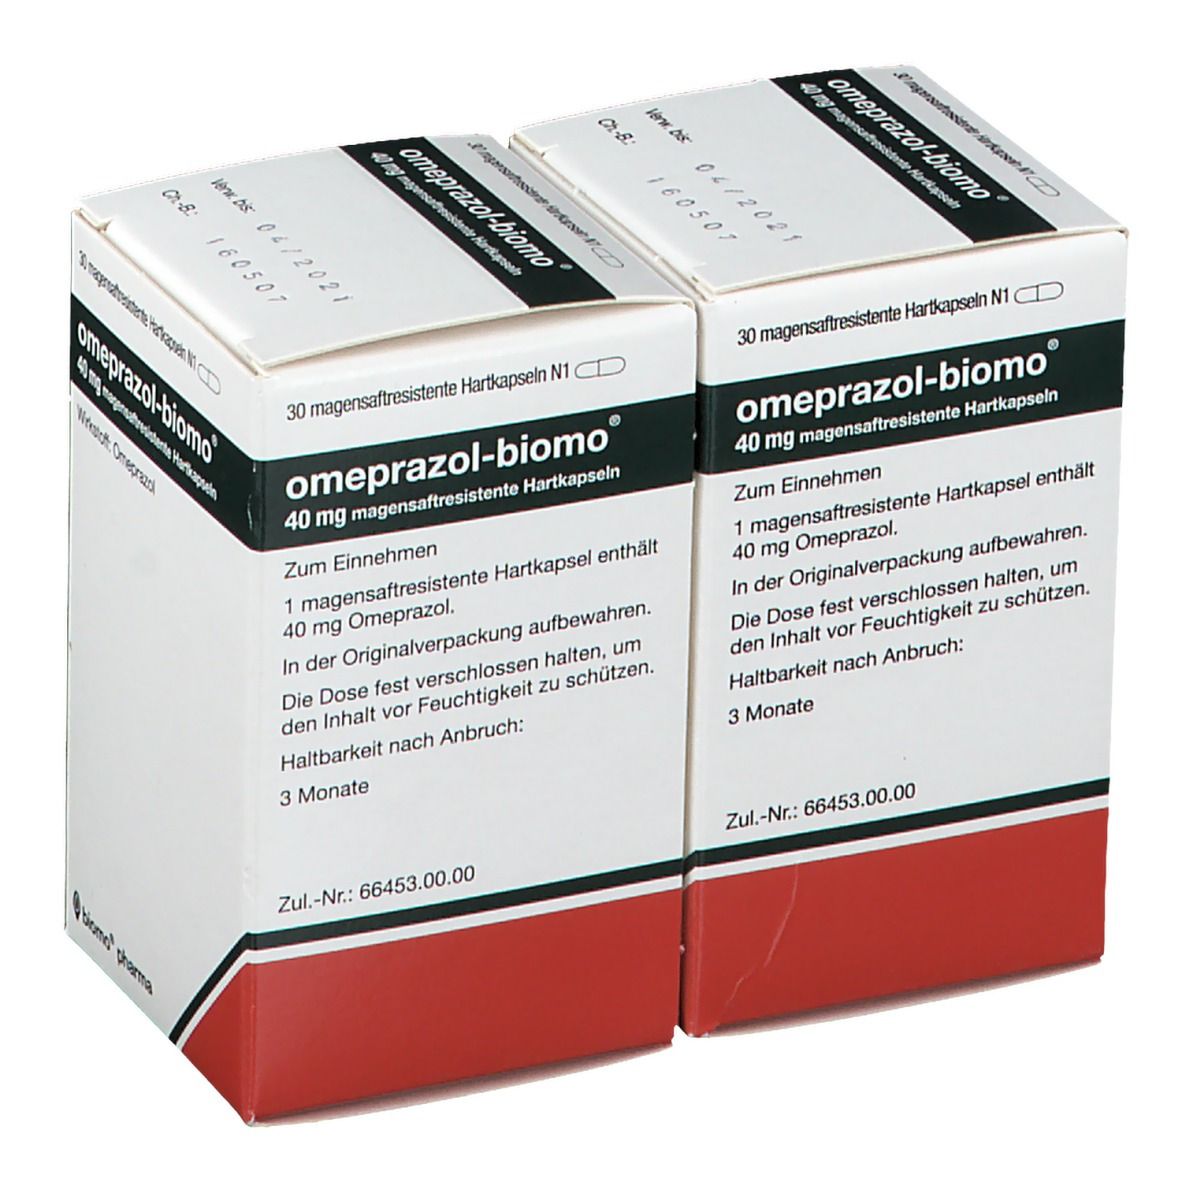 omeprazol-biomo® 40 mg